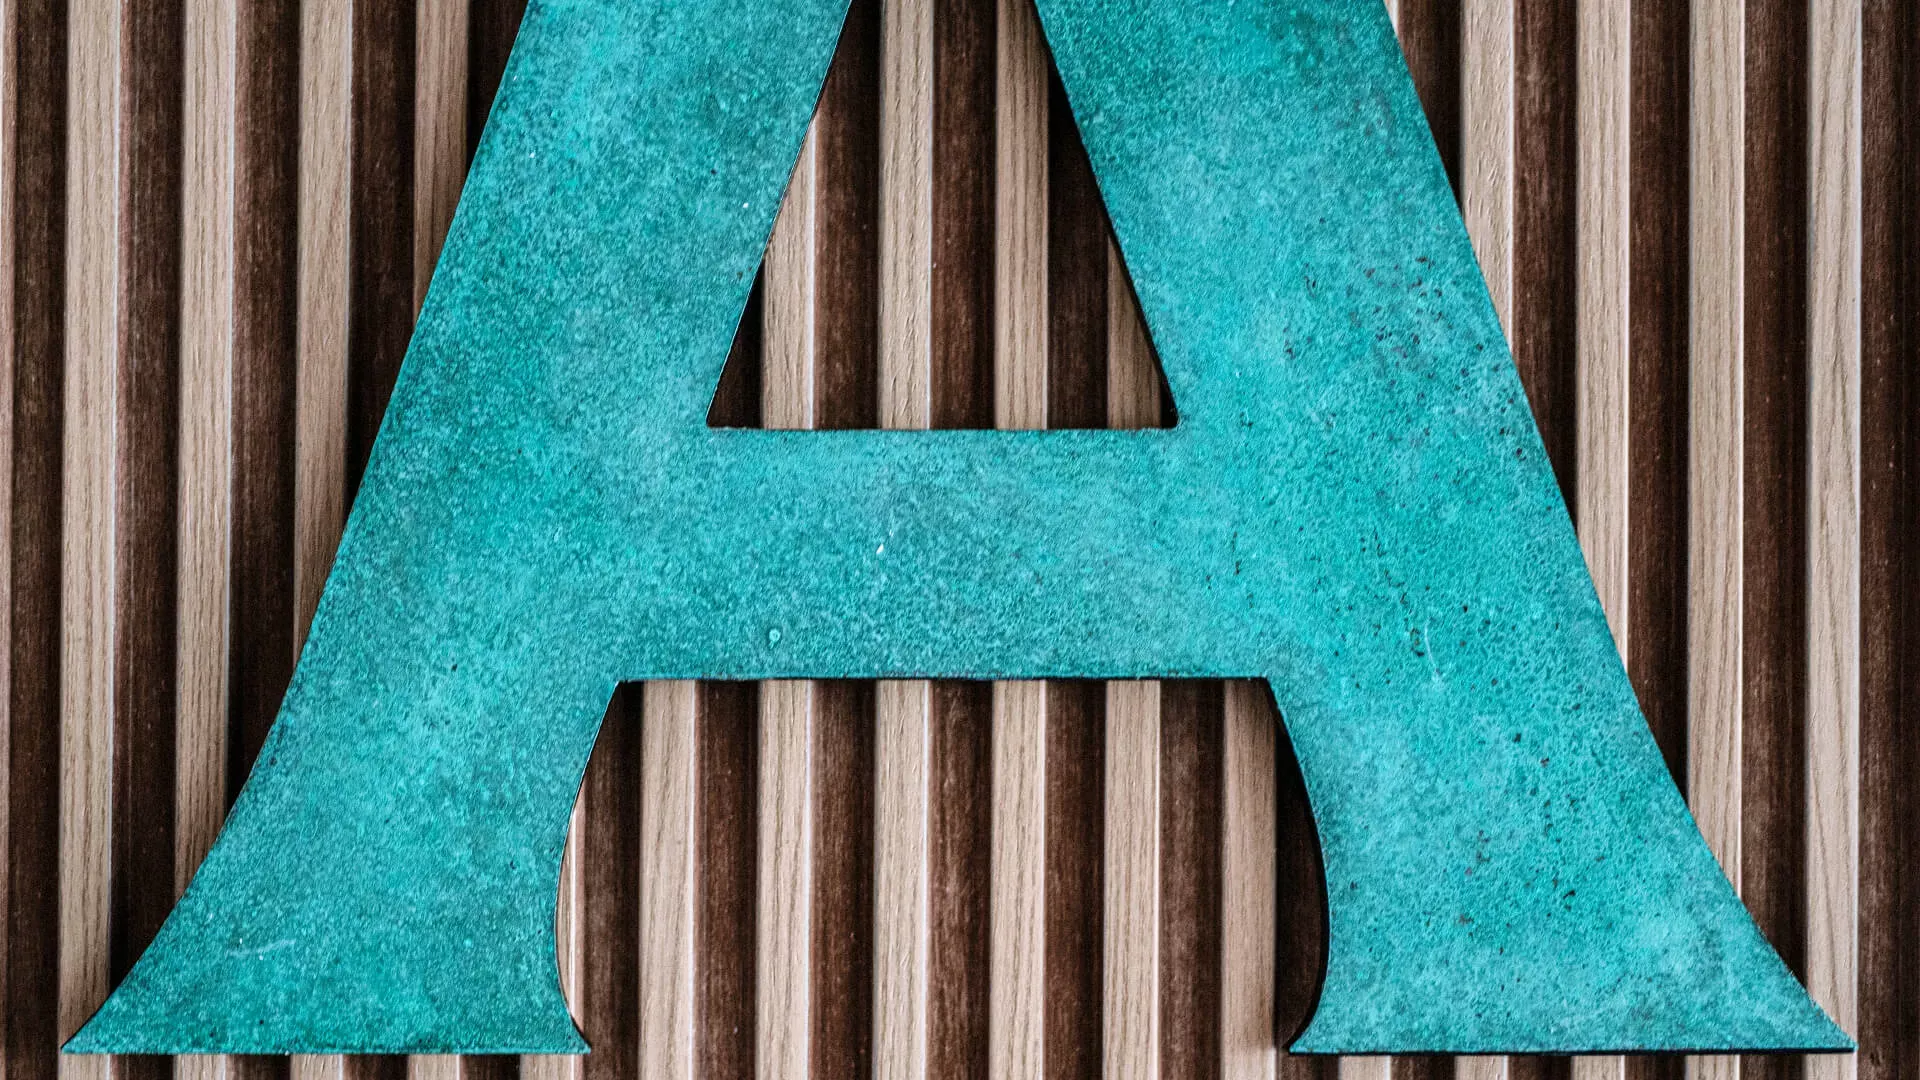 Litera A - wykonana z metalu w stylu industrialnym, pokryta patyną